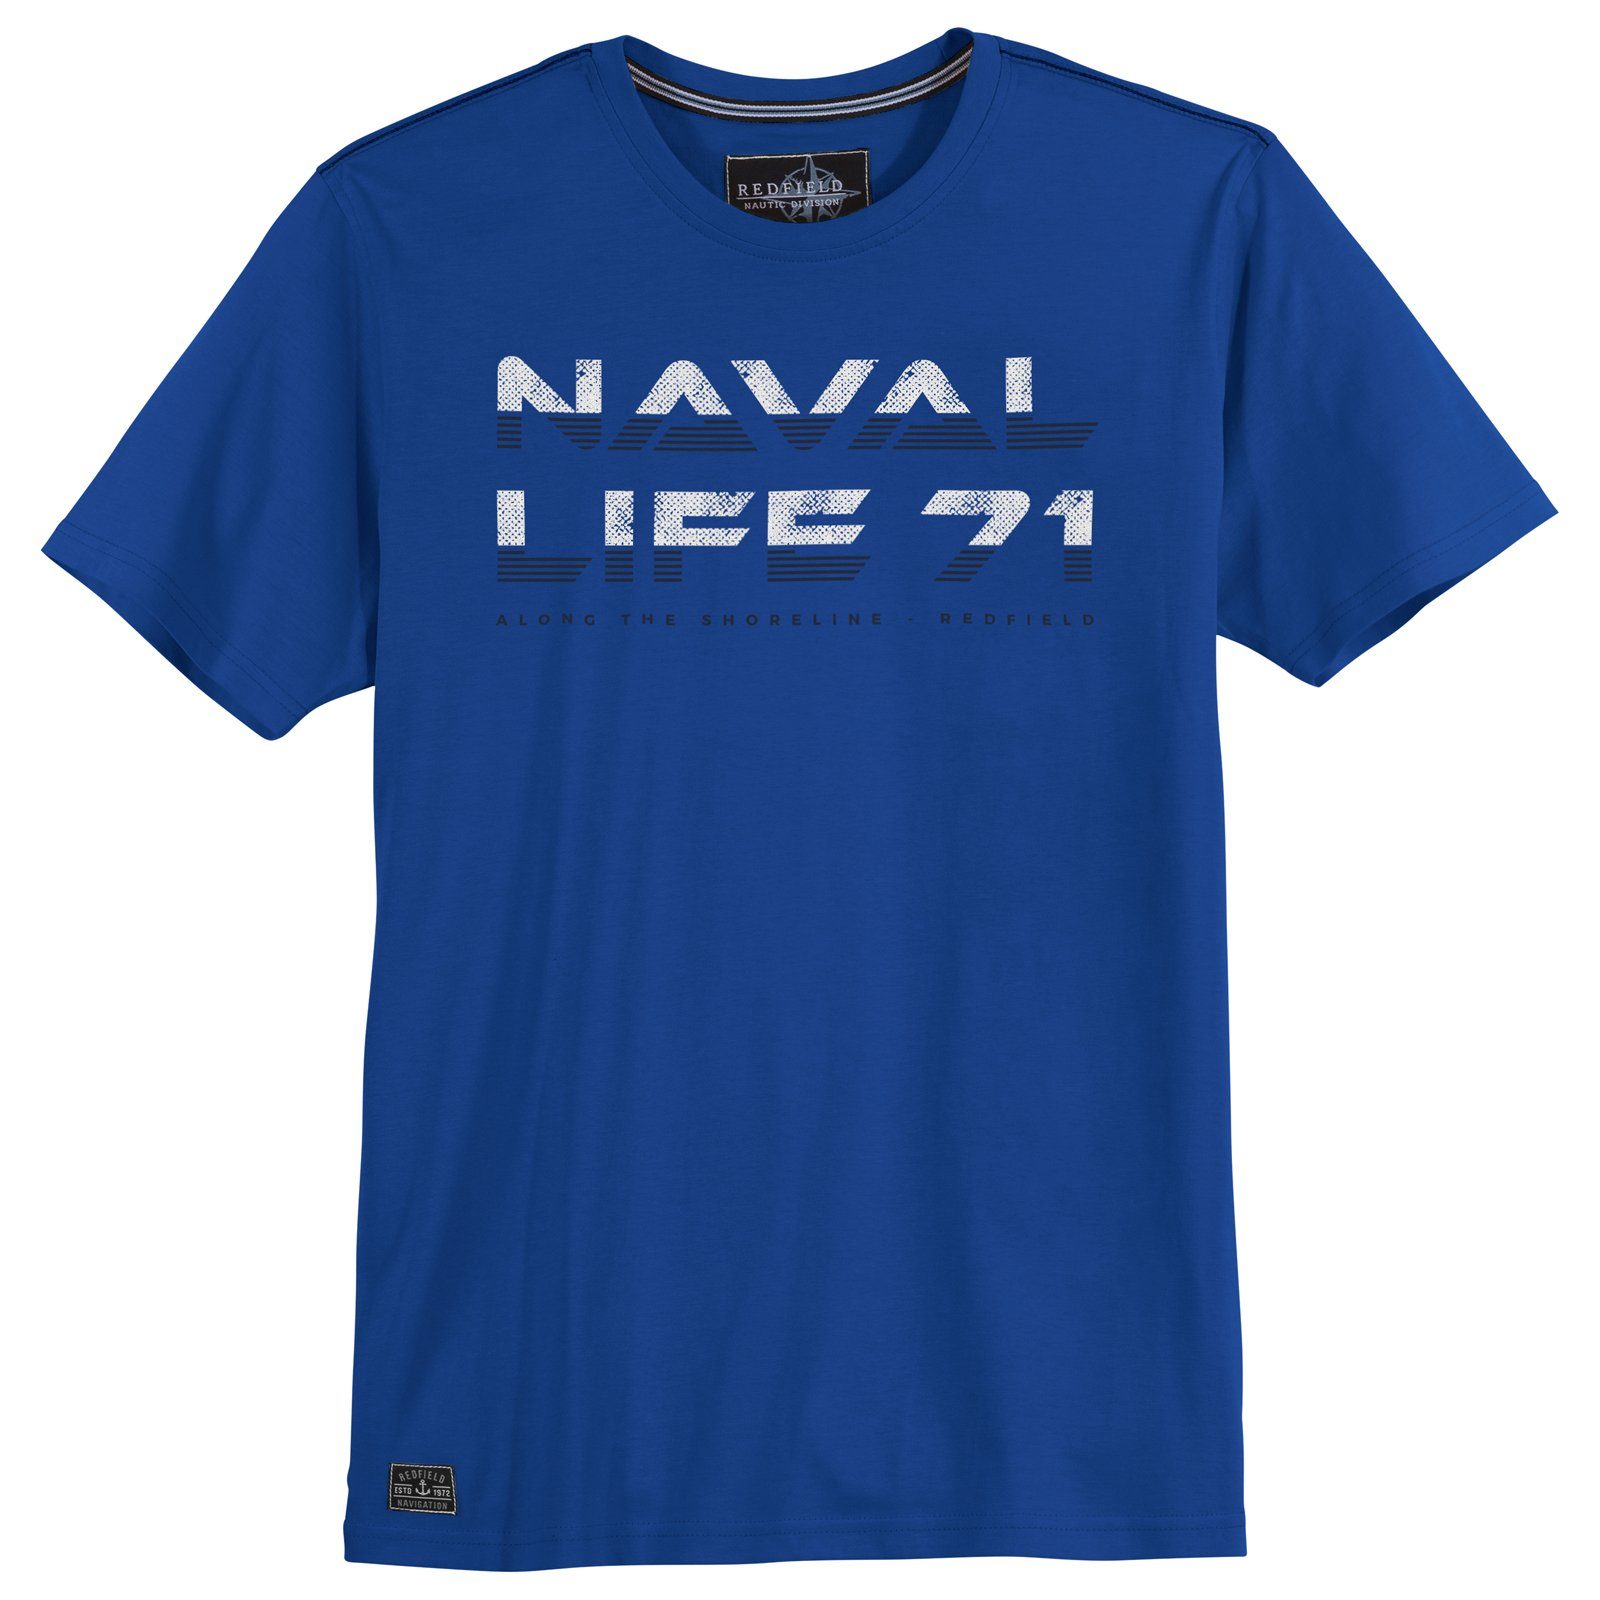 redfield Rundhalsshirt Große Größen Herren Redfield T-Shirt Naval Life 71 royalblau